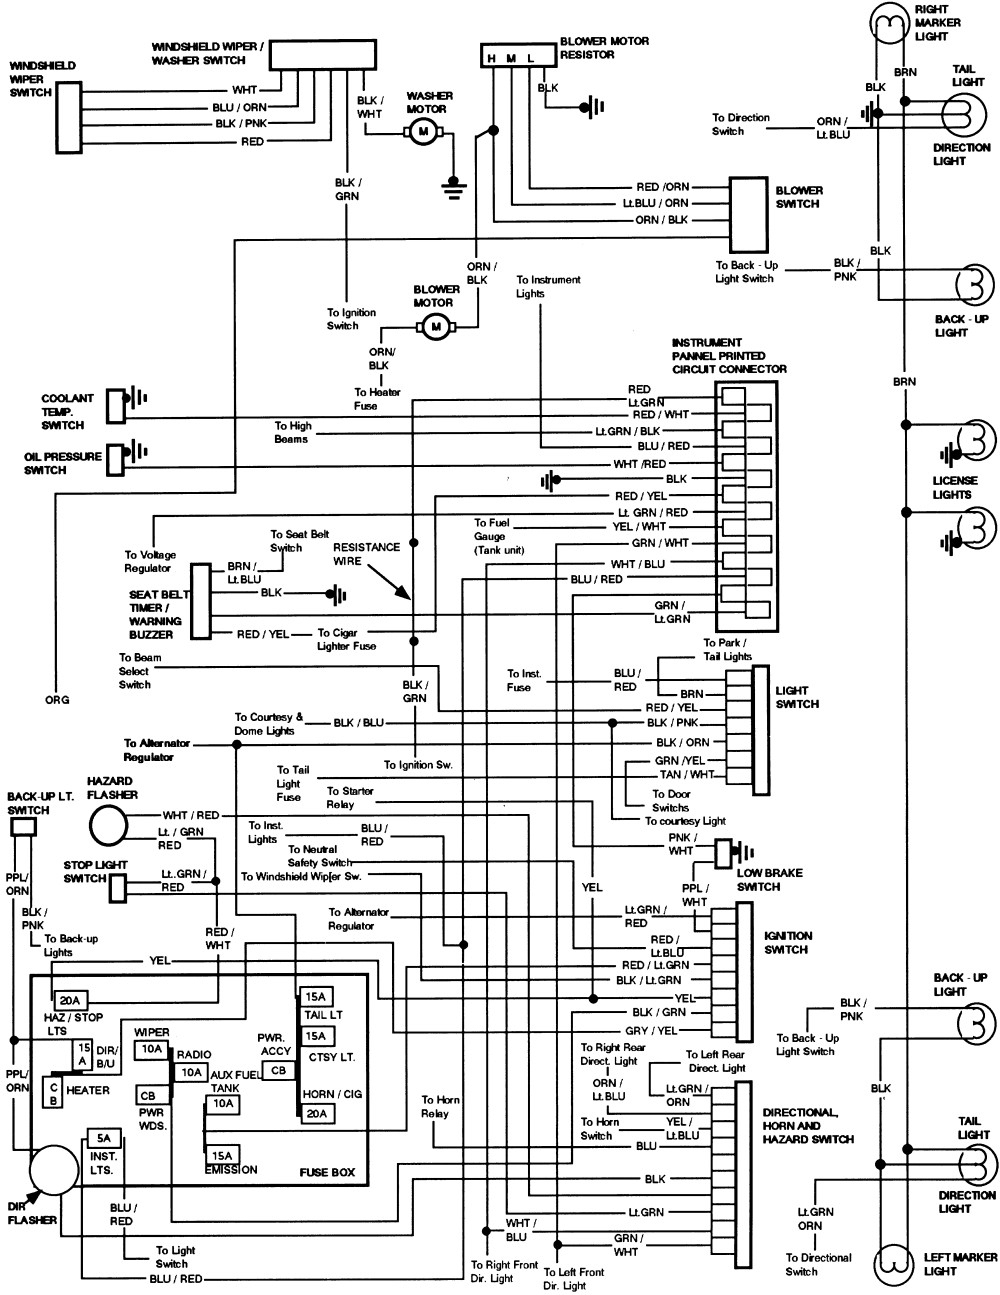 F350 Wiring Schematics | Schematic Diagram - Ford F350 Wiring Diagram Free